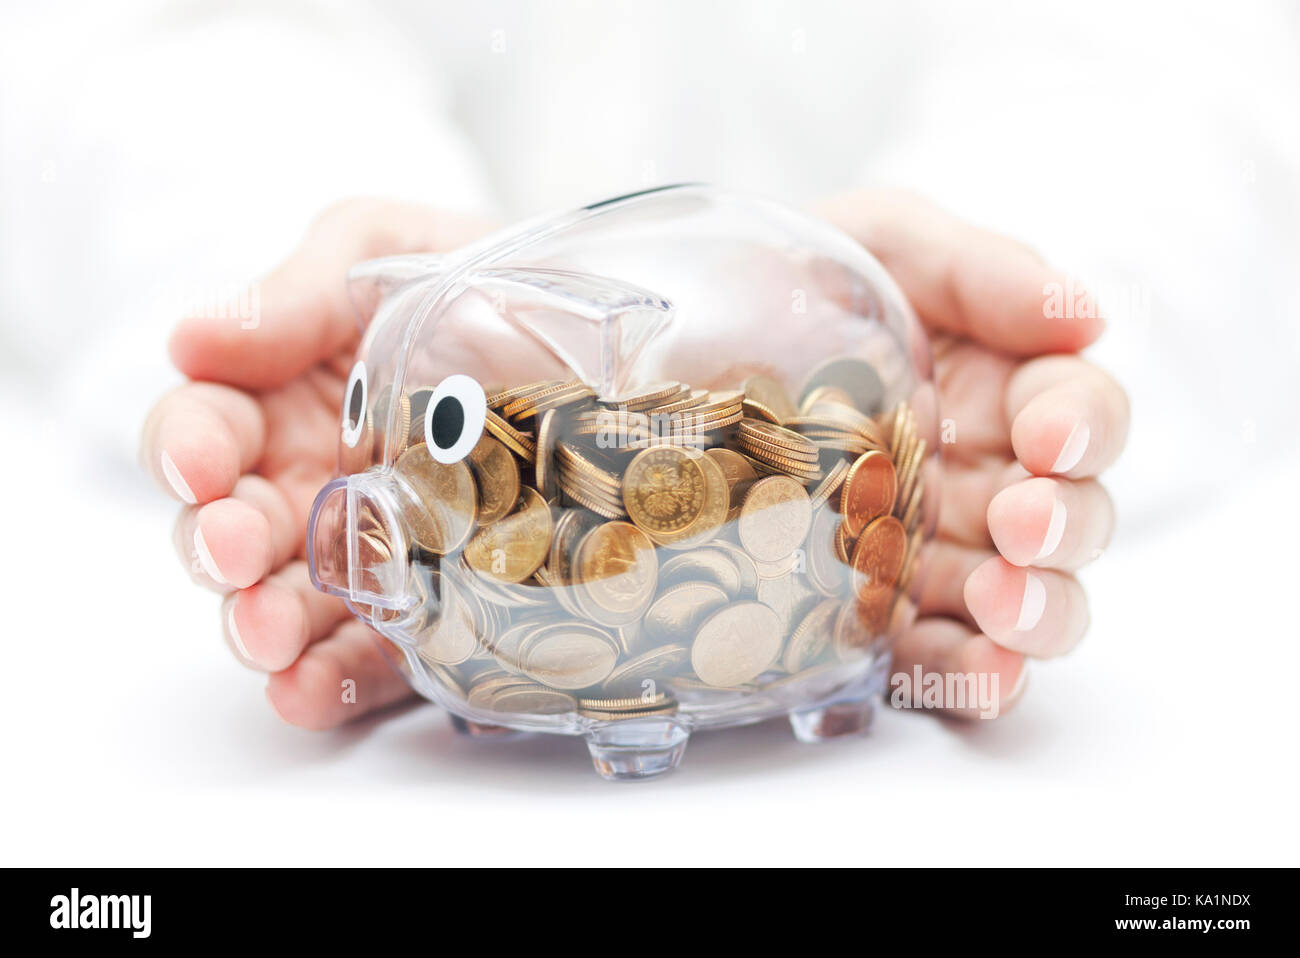 Ihr Geld schützen. Transparentes Sparschwein mit Münzen von Händen bedeckt  Stockfotografie - Alamy